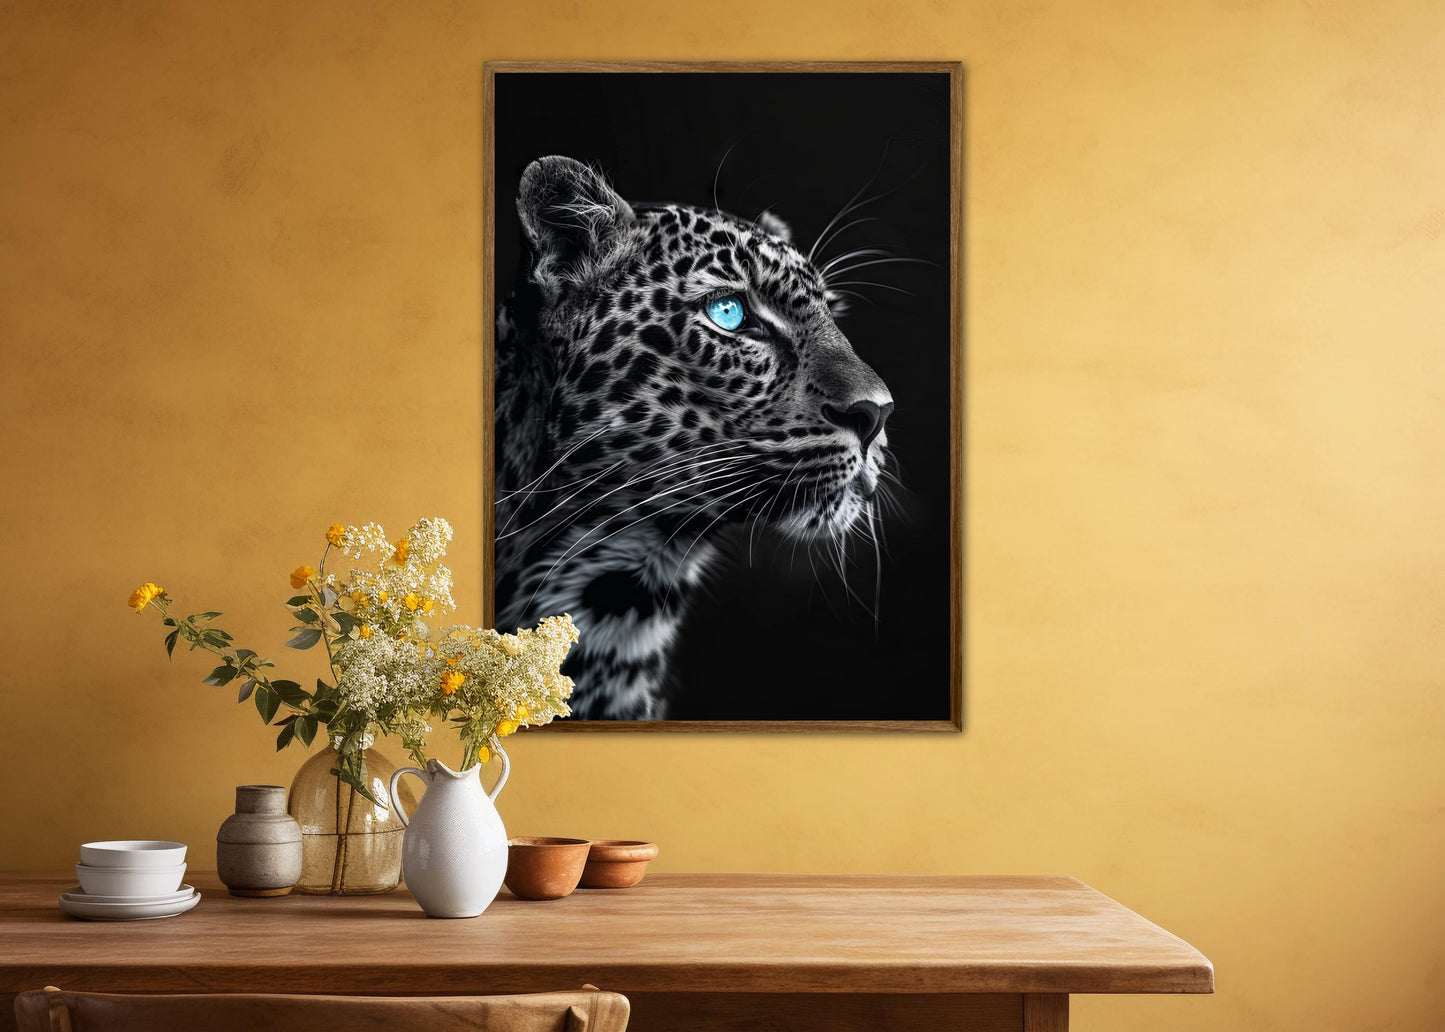 Blue Eyes 15 - Leopard